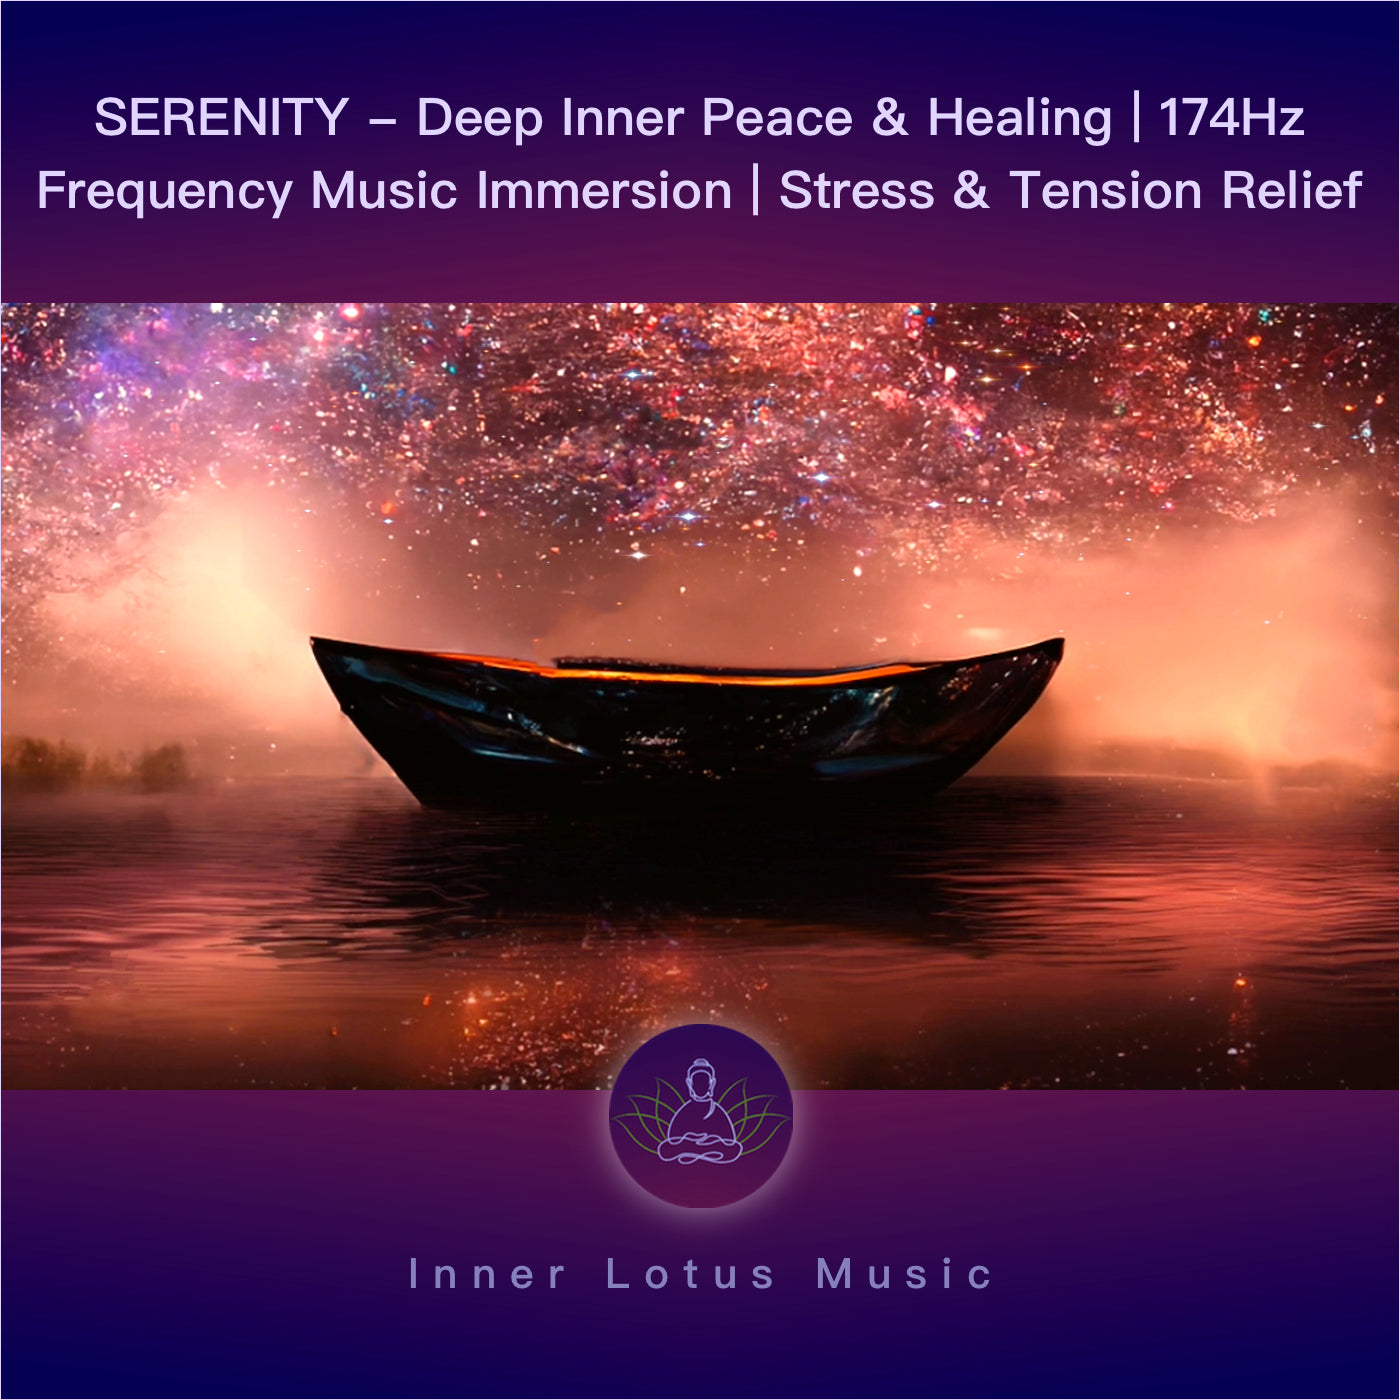 SERENIDAD - Paz Interior Profunda y Curación | Música inmersiva 174Hz contra Estrés, Tensión y Dolor